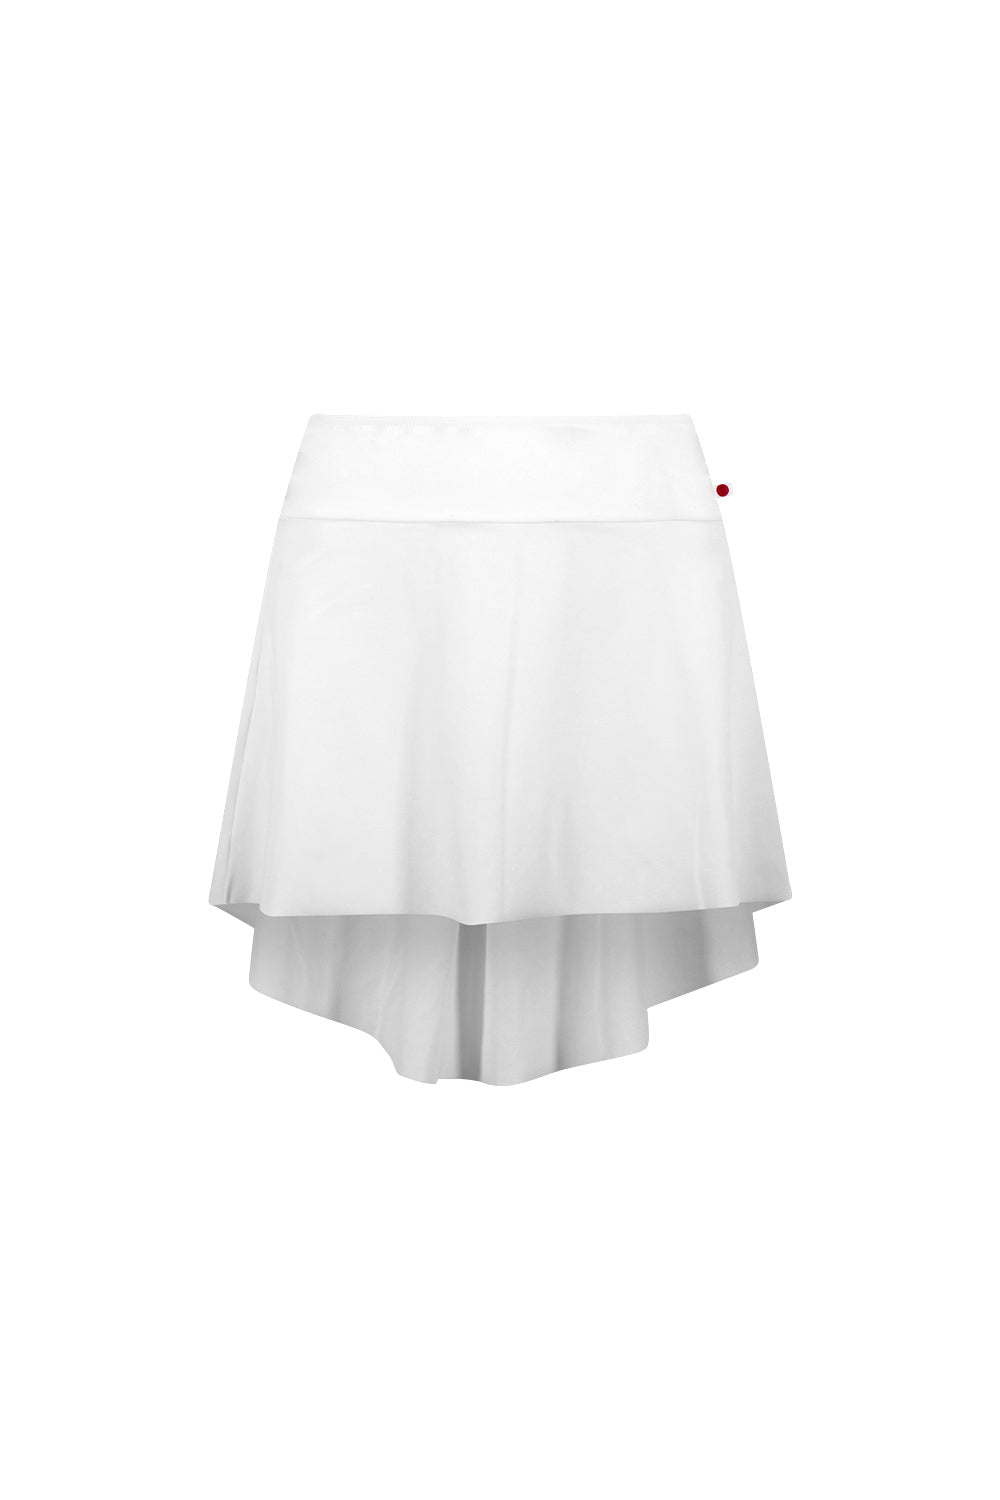 ユミコ イザベル ショートスカート（在庫商品）YUMIKO ISABELLE N 